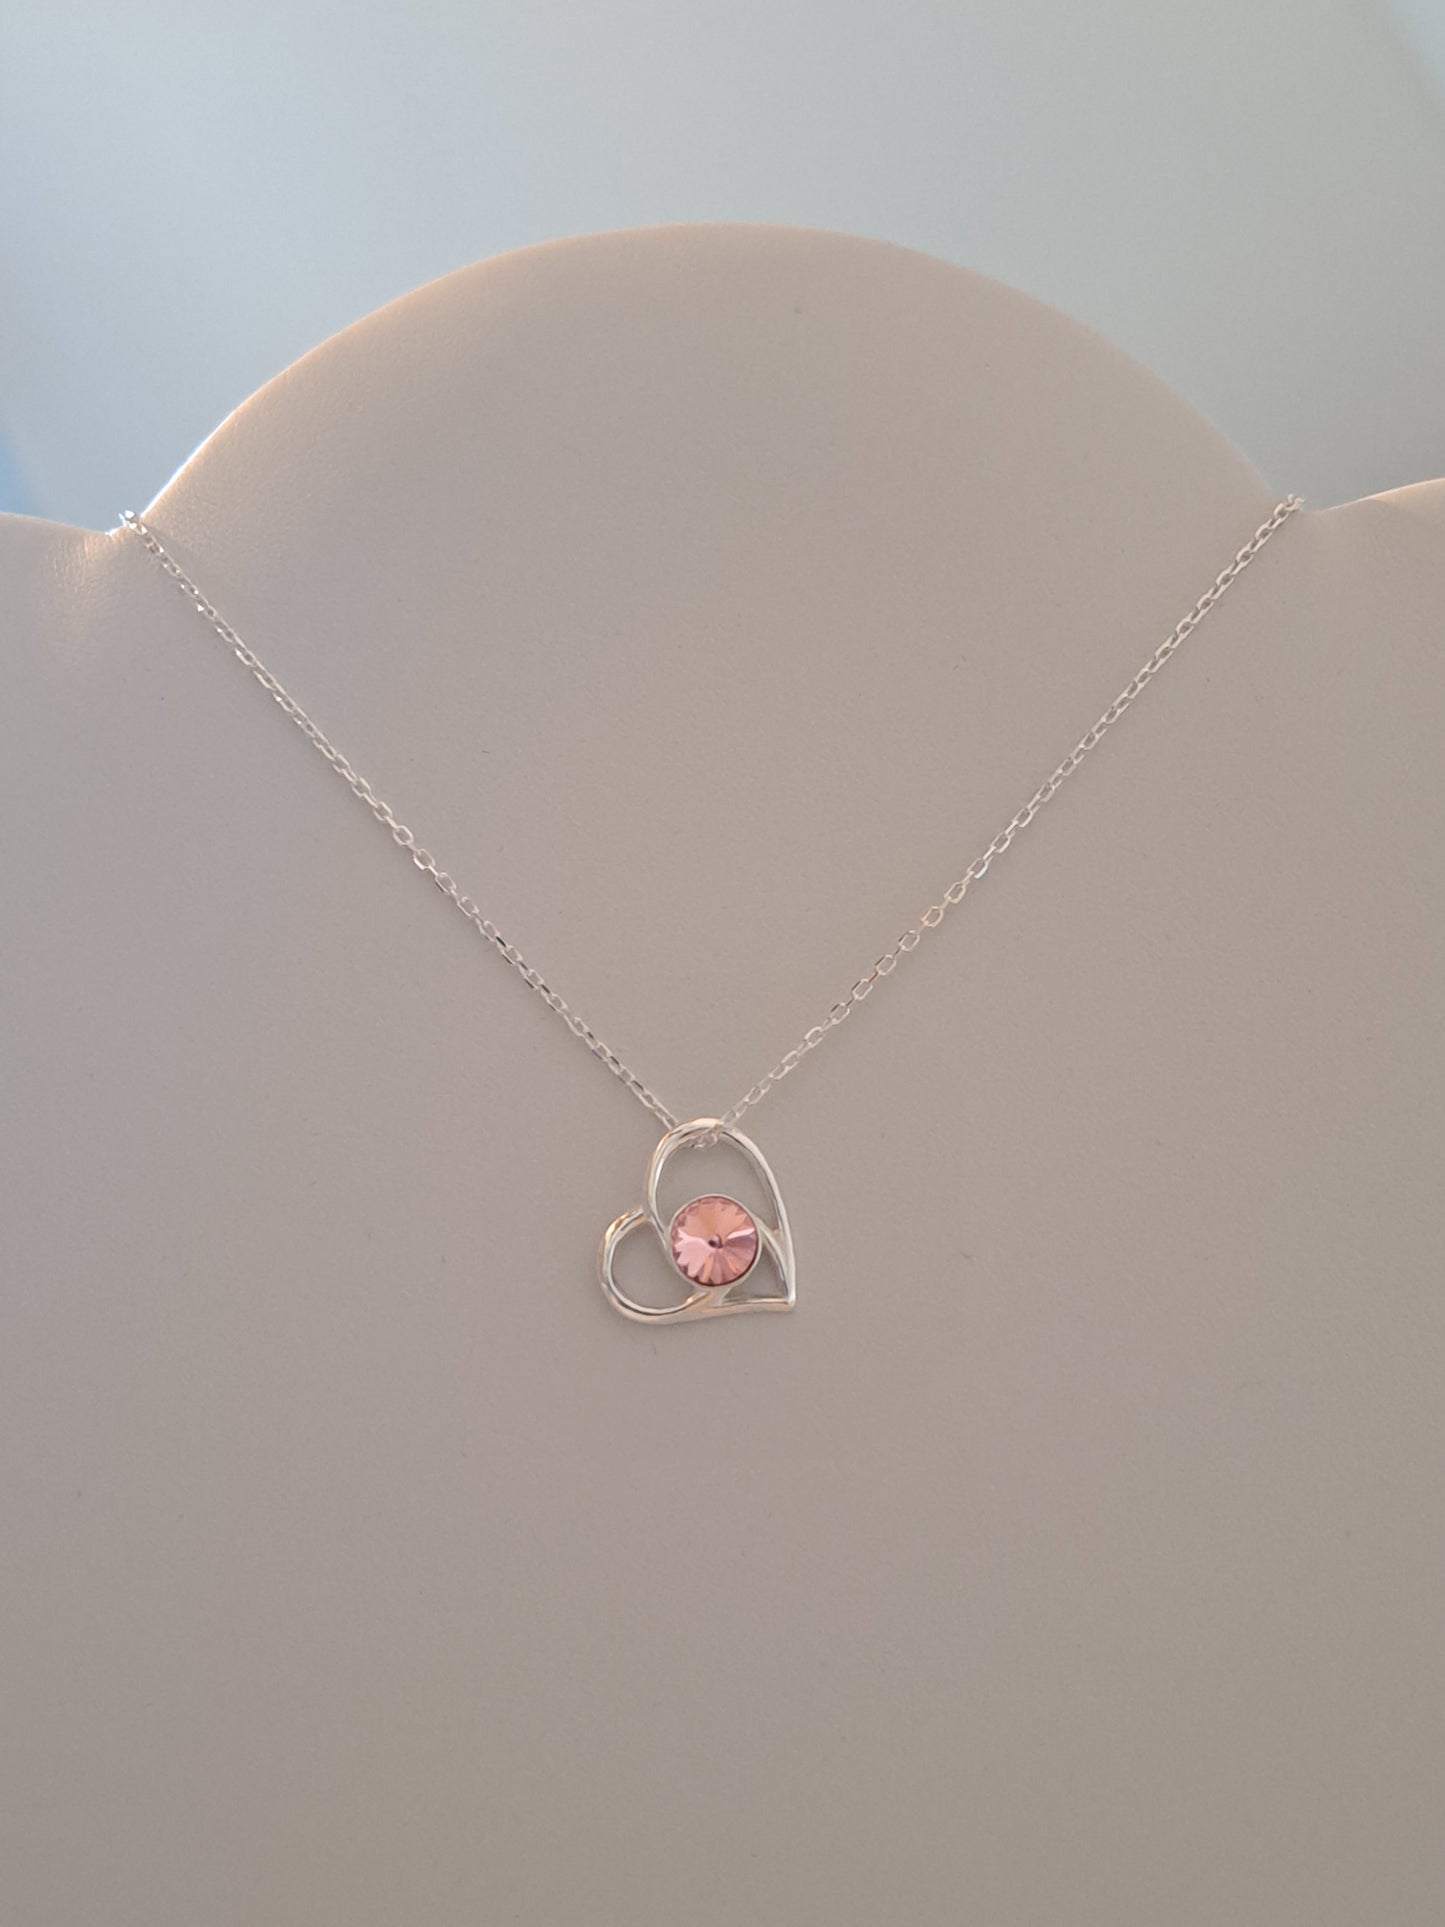 Collier en argent fin et élégant, pendentif coeur orné d'un cristal rose clair. Site de bijjoux. France